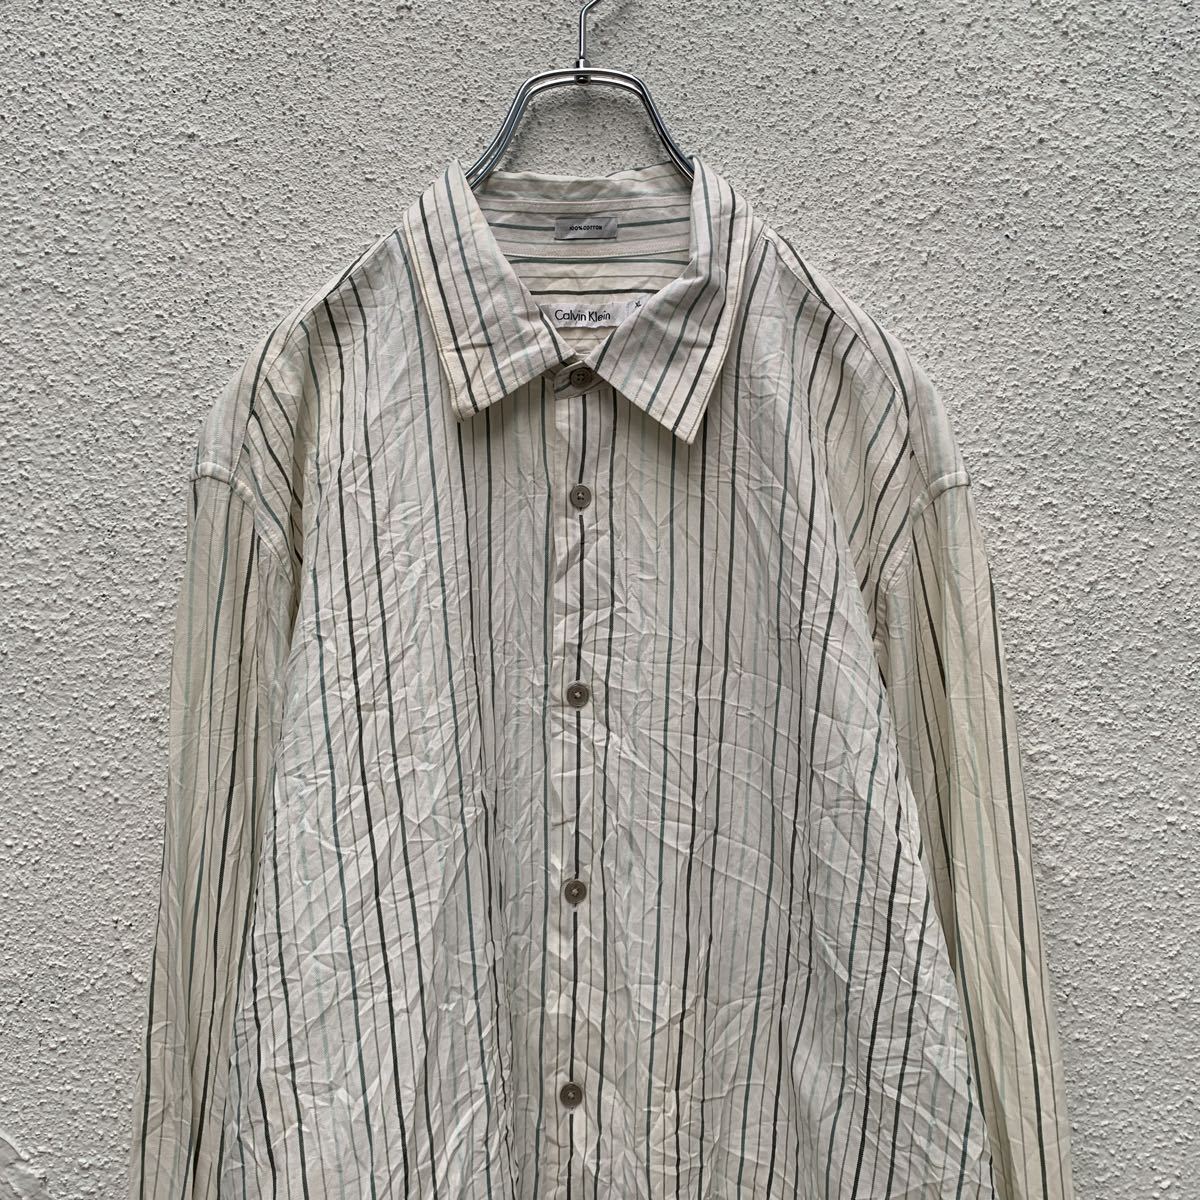 Calvin Klein long sleeve stripe shirt XL white green Calvin Klein big size old clothes . America stock a408-6094